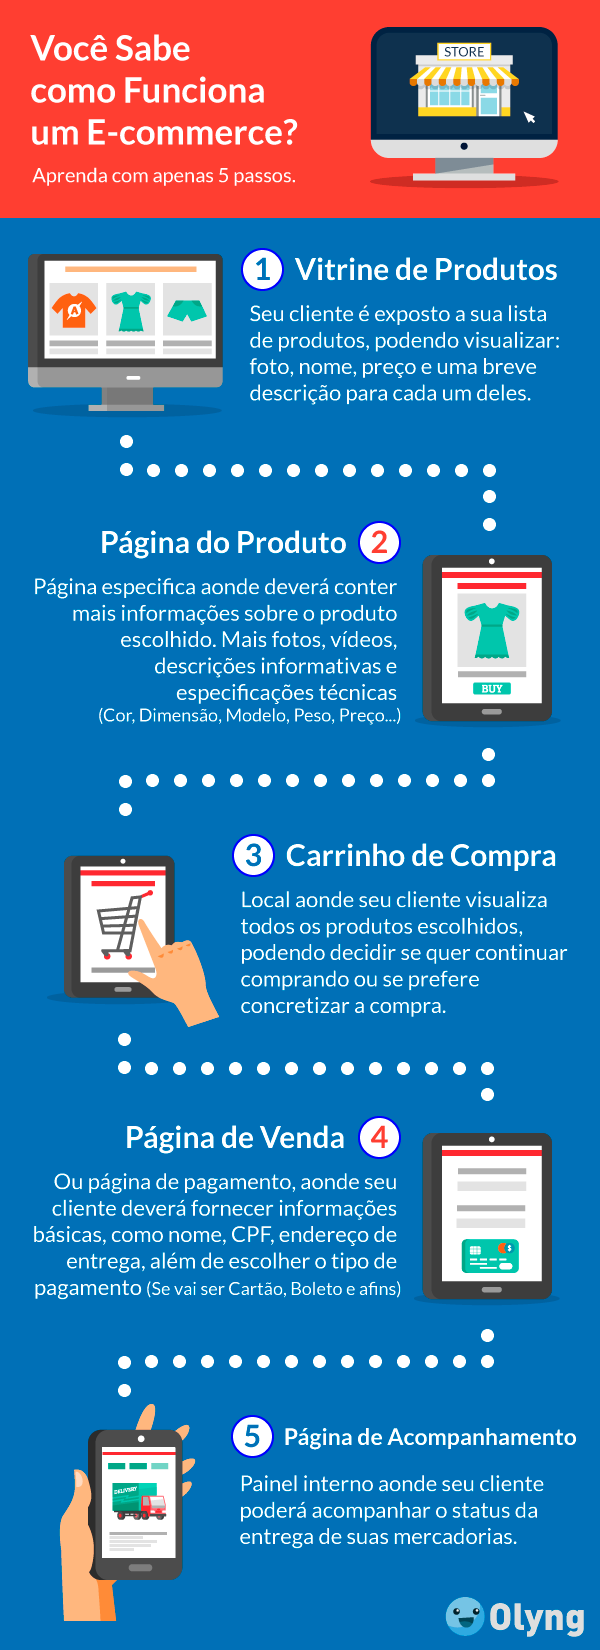 Infográfico sobre como funciona a estrugtura do e-commerce em 5 passos.